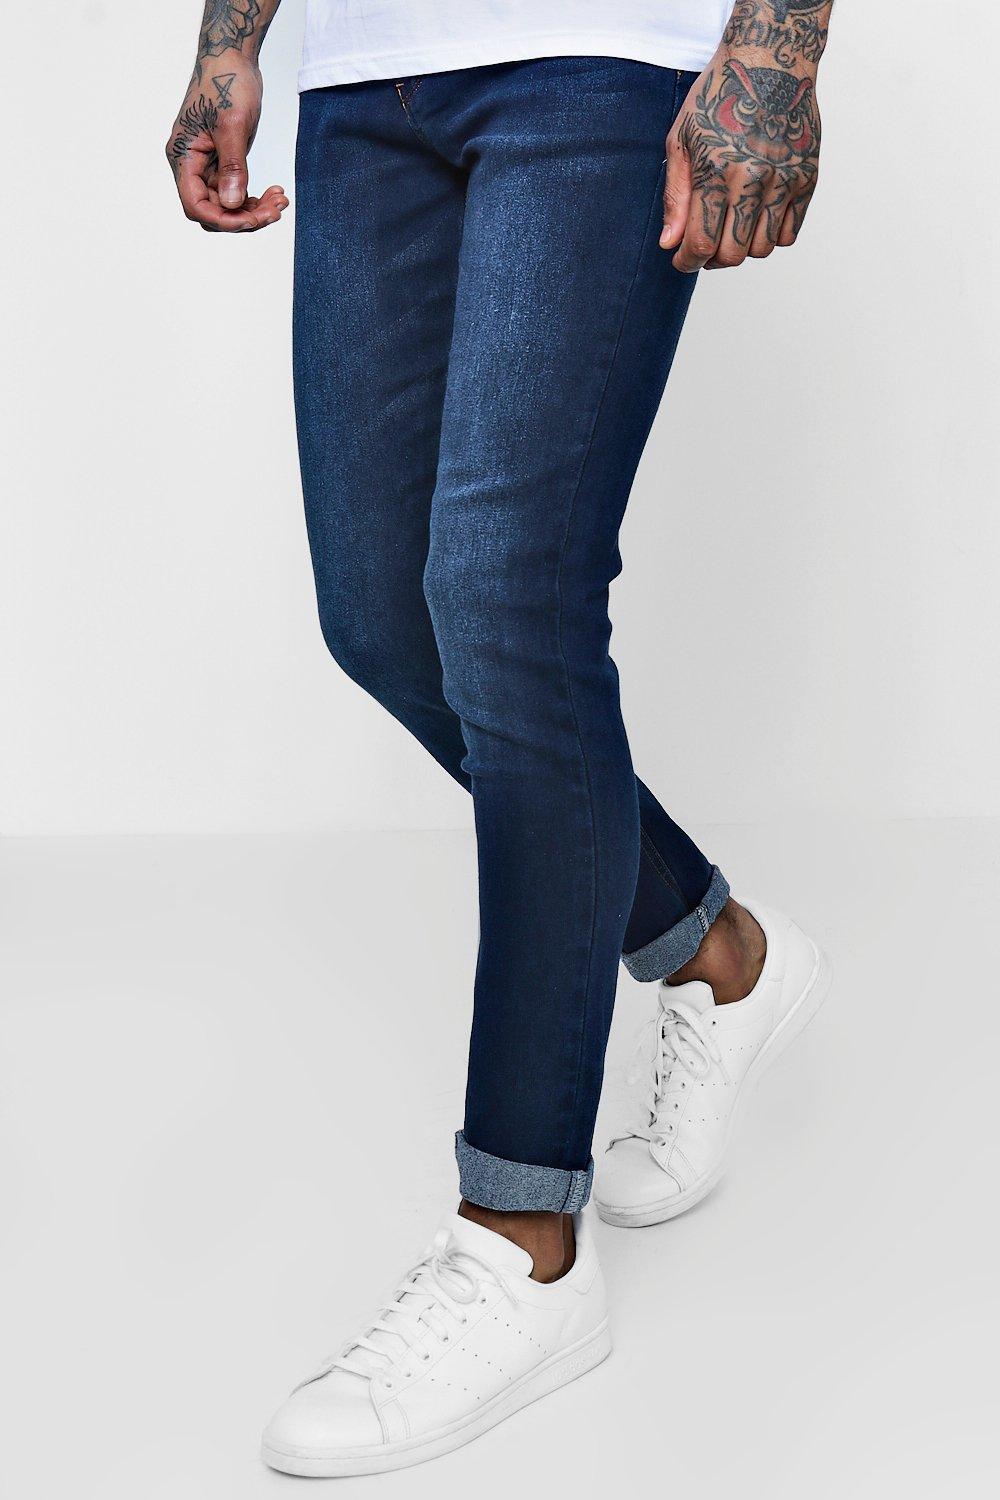 indigo stretch skinny jeans